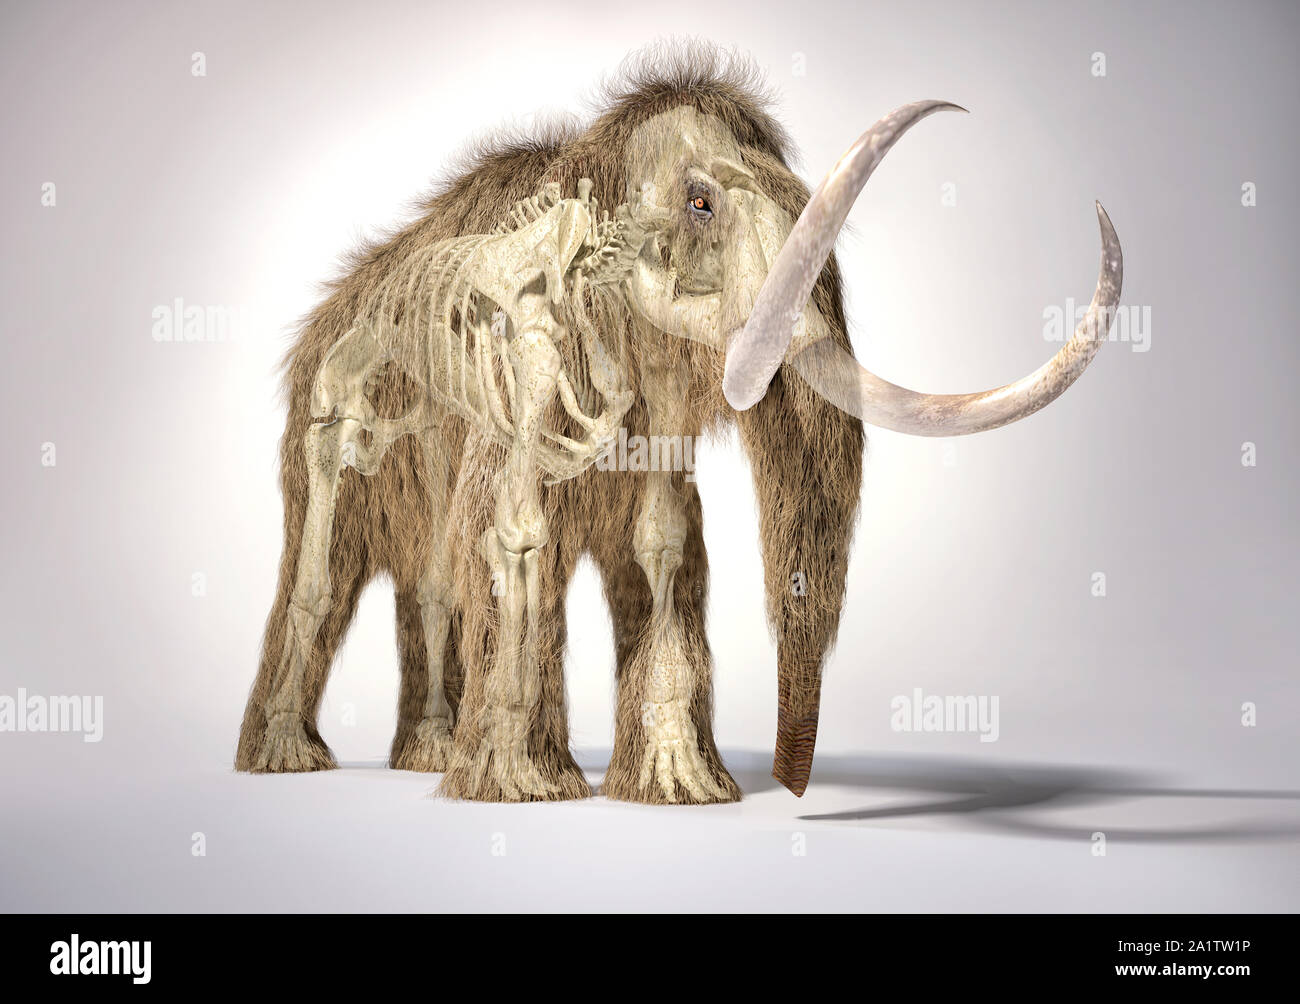 Le mammouth 3d illustration réaliste avec effet fantôme squelette en perspective, vu de l'avant. Sur fond blanc et abandonné l'ombre. Banque D'Images